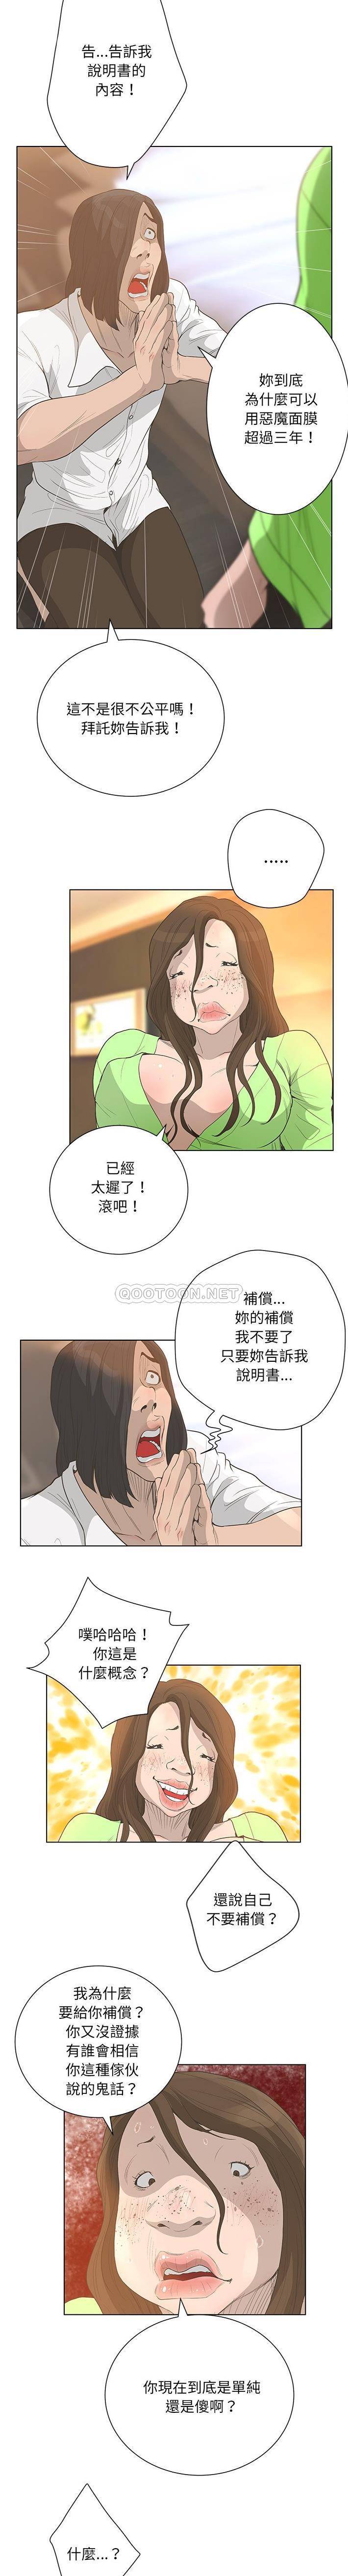 韩国污漫画 變身面膜 最终话 13